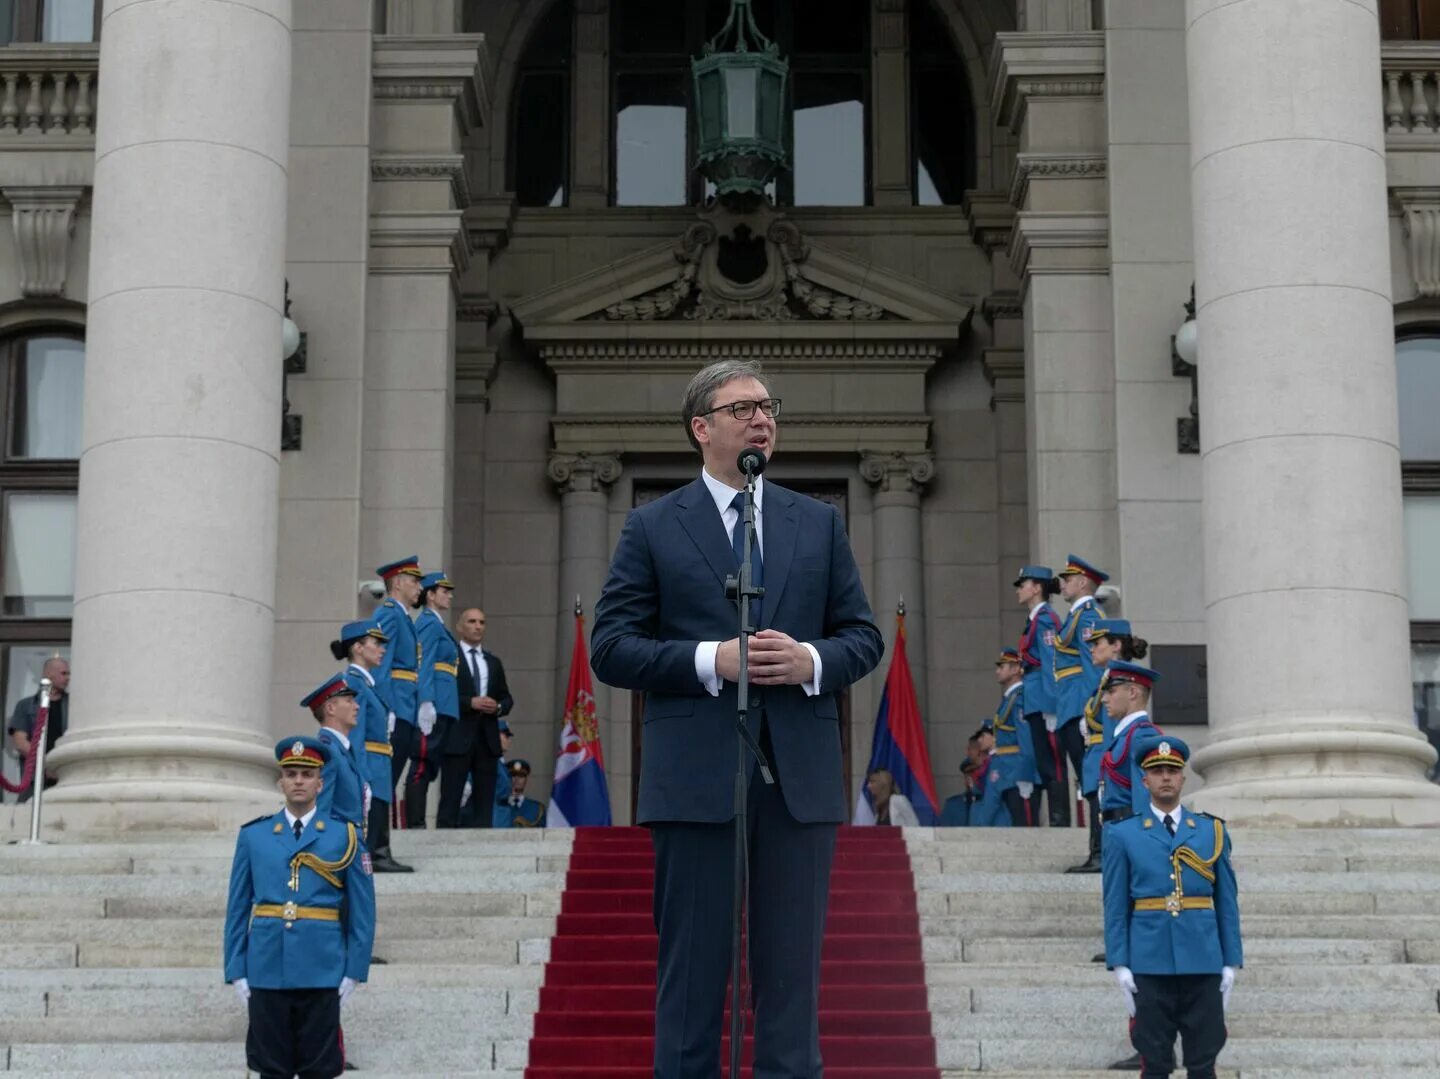 Поздравил ли вучич. Президентский дворец Сербия. Рост Вучича Сербия. Вучич НАТО.